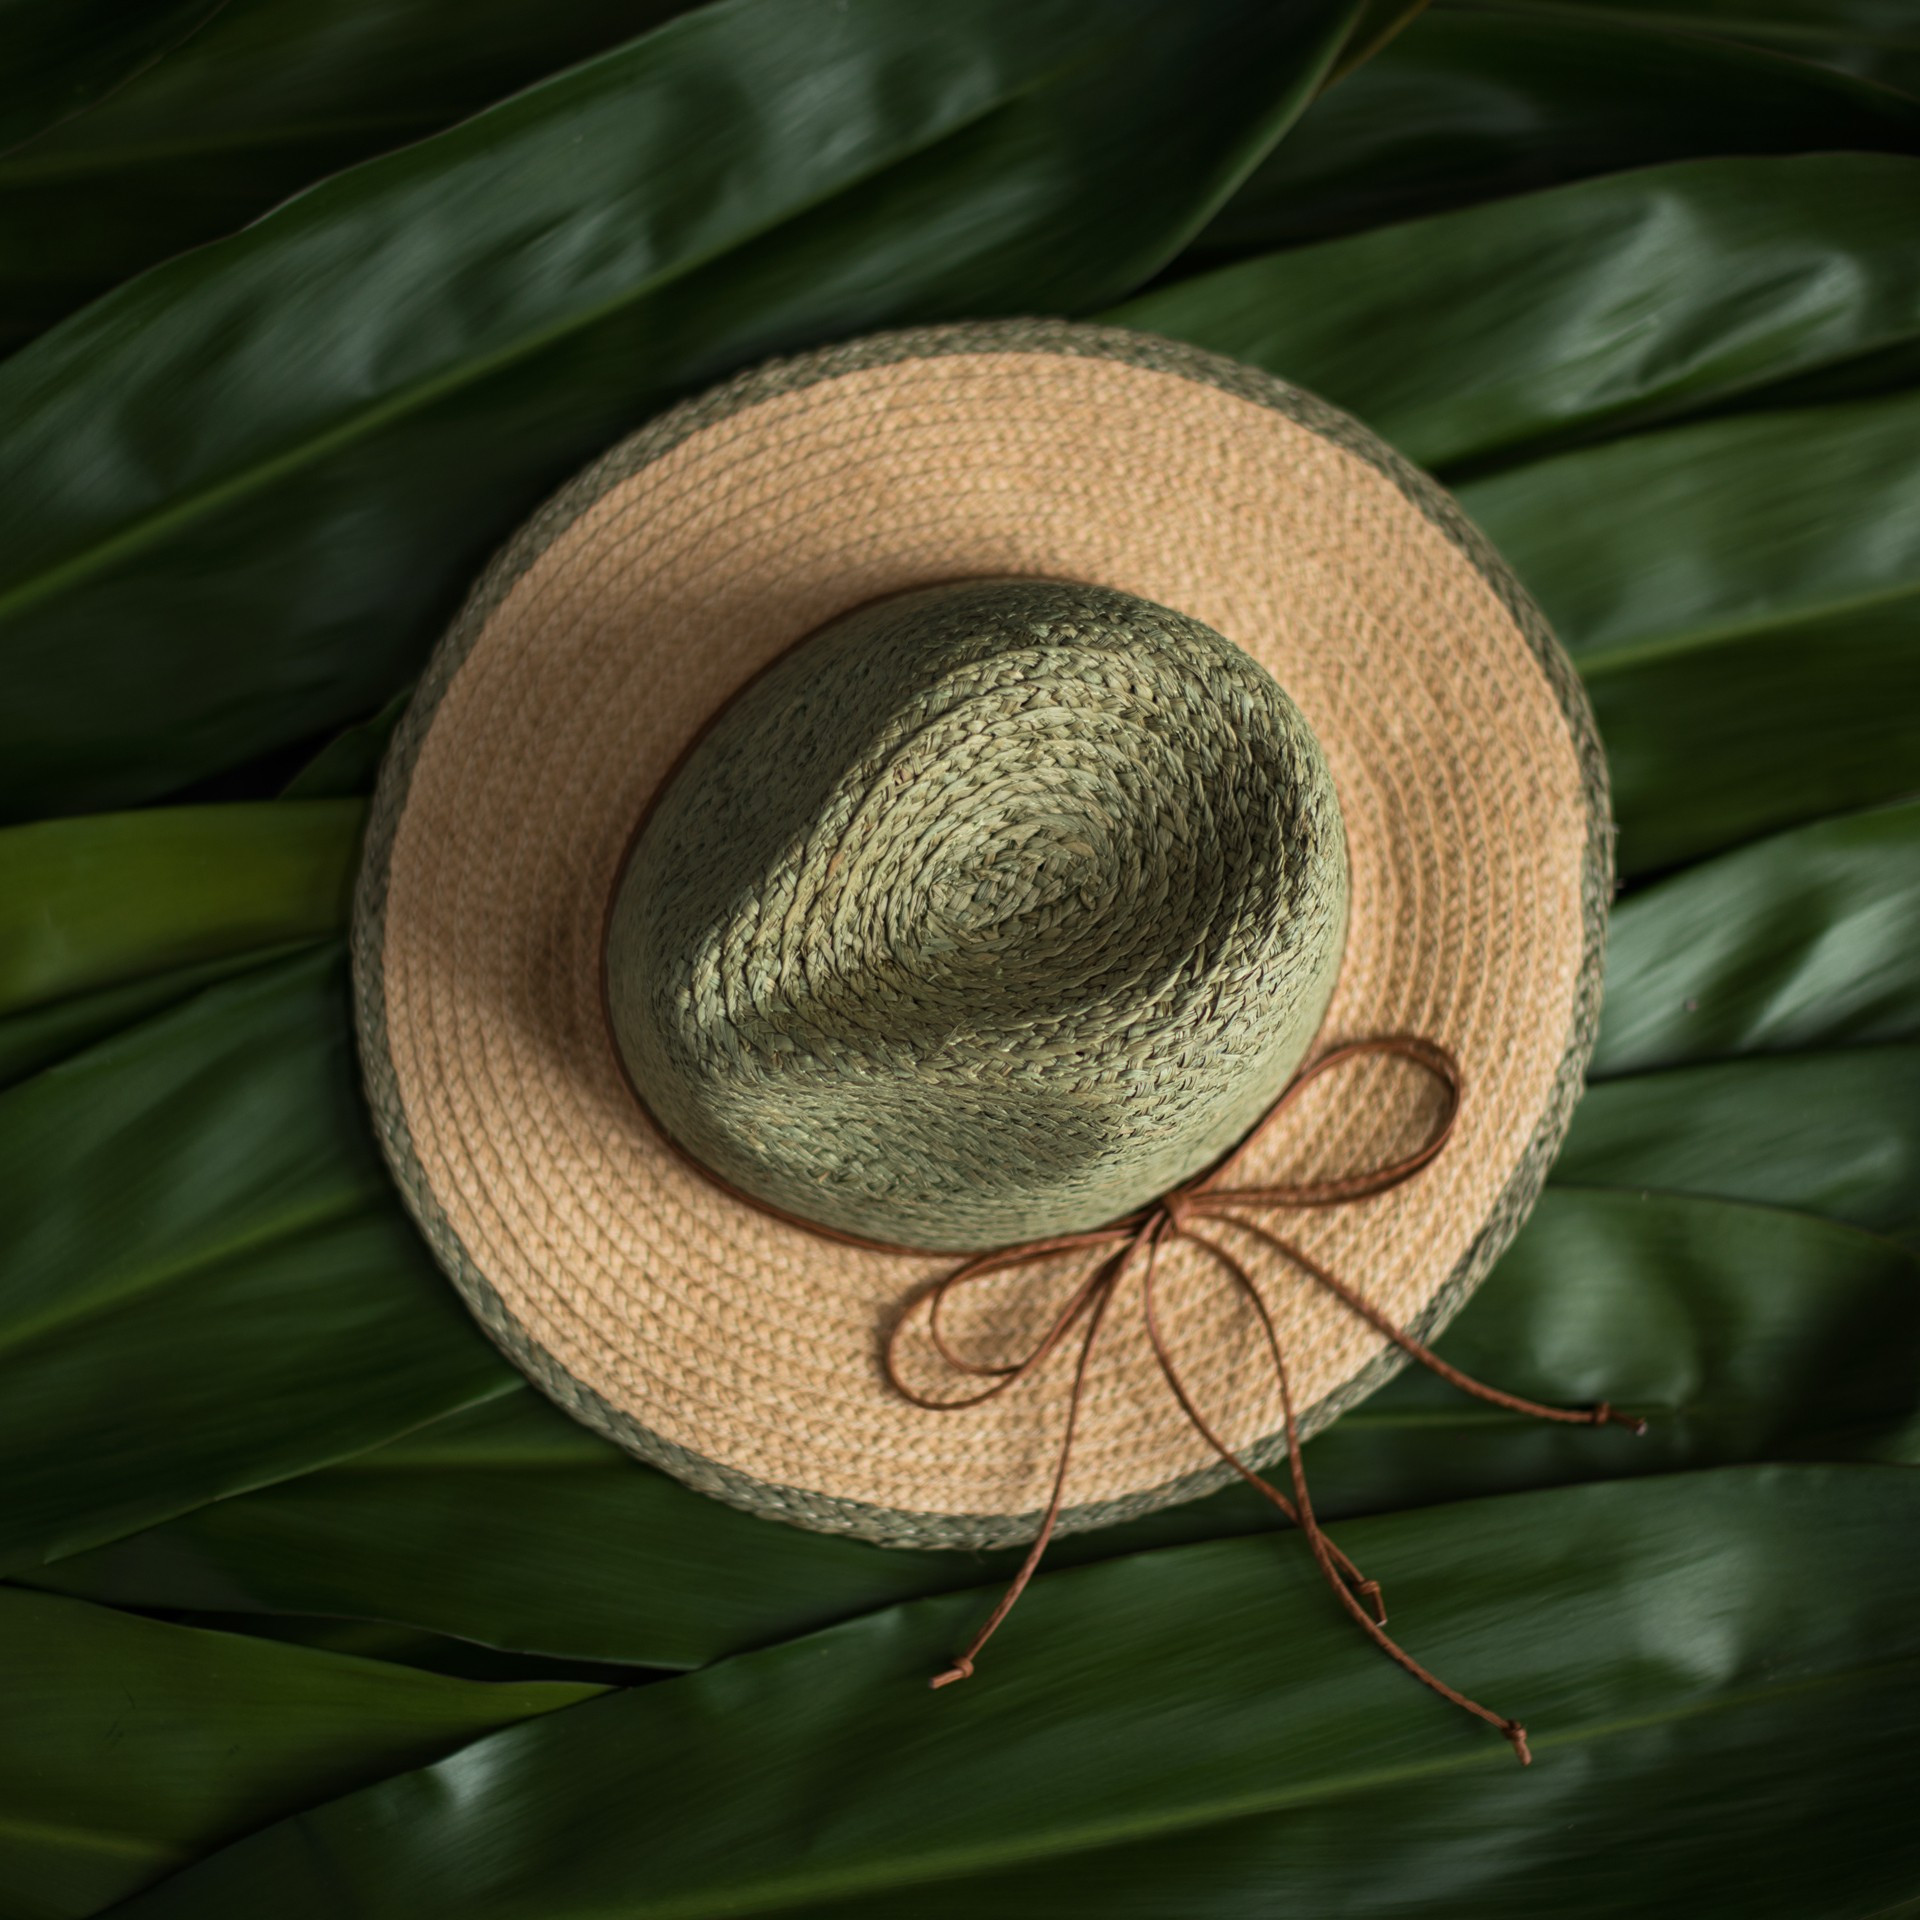 Dámský klobouk Art Of Polo Hat cz21175-2 Light Beige UNI